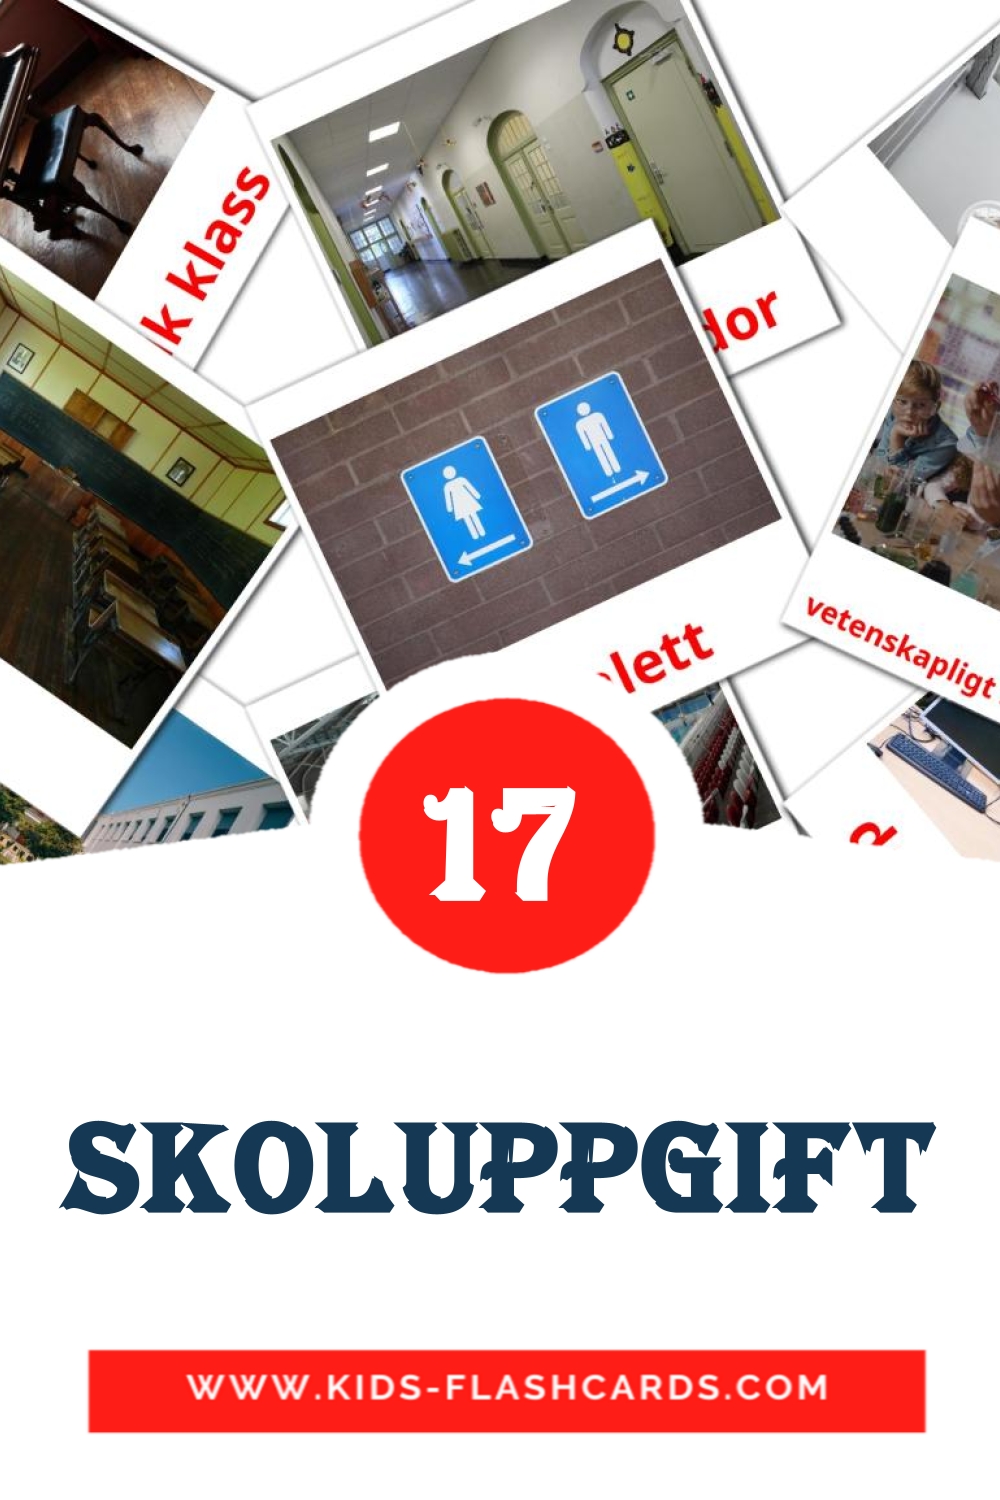 17 tarjetas didacticas de Skoluppgift para el jardín de infancia en sueco